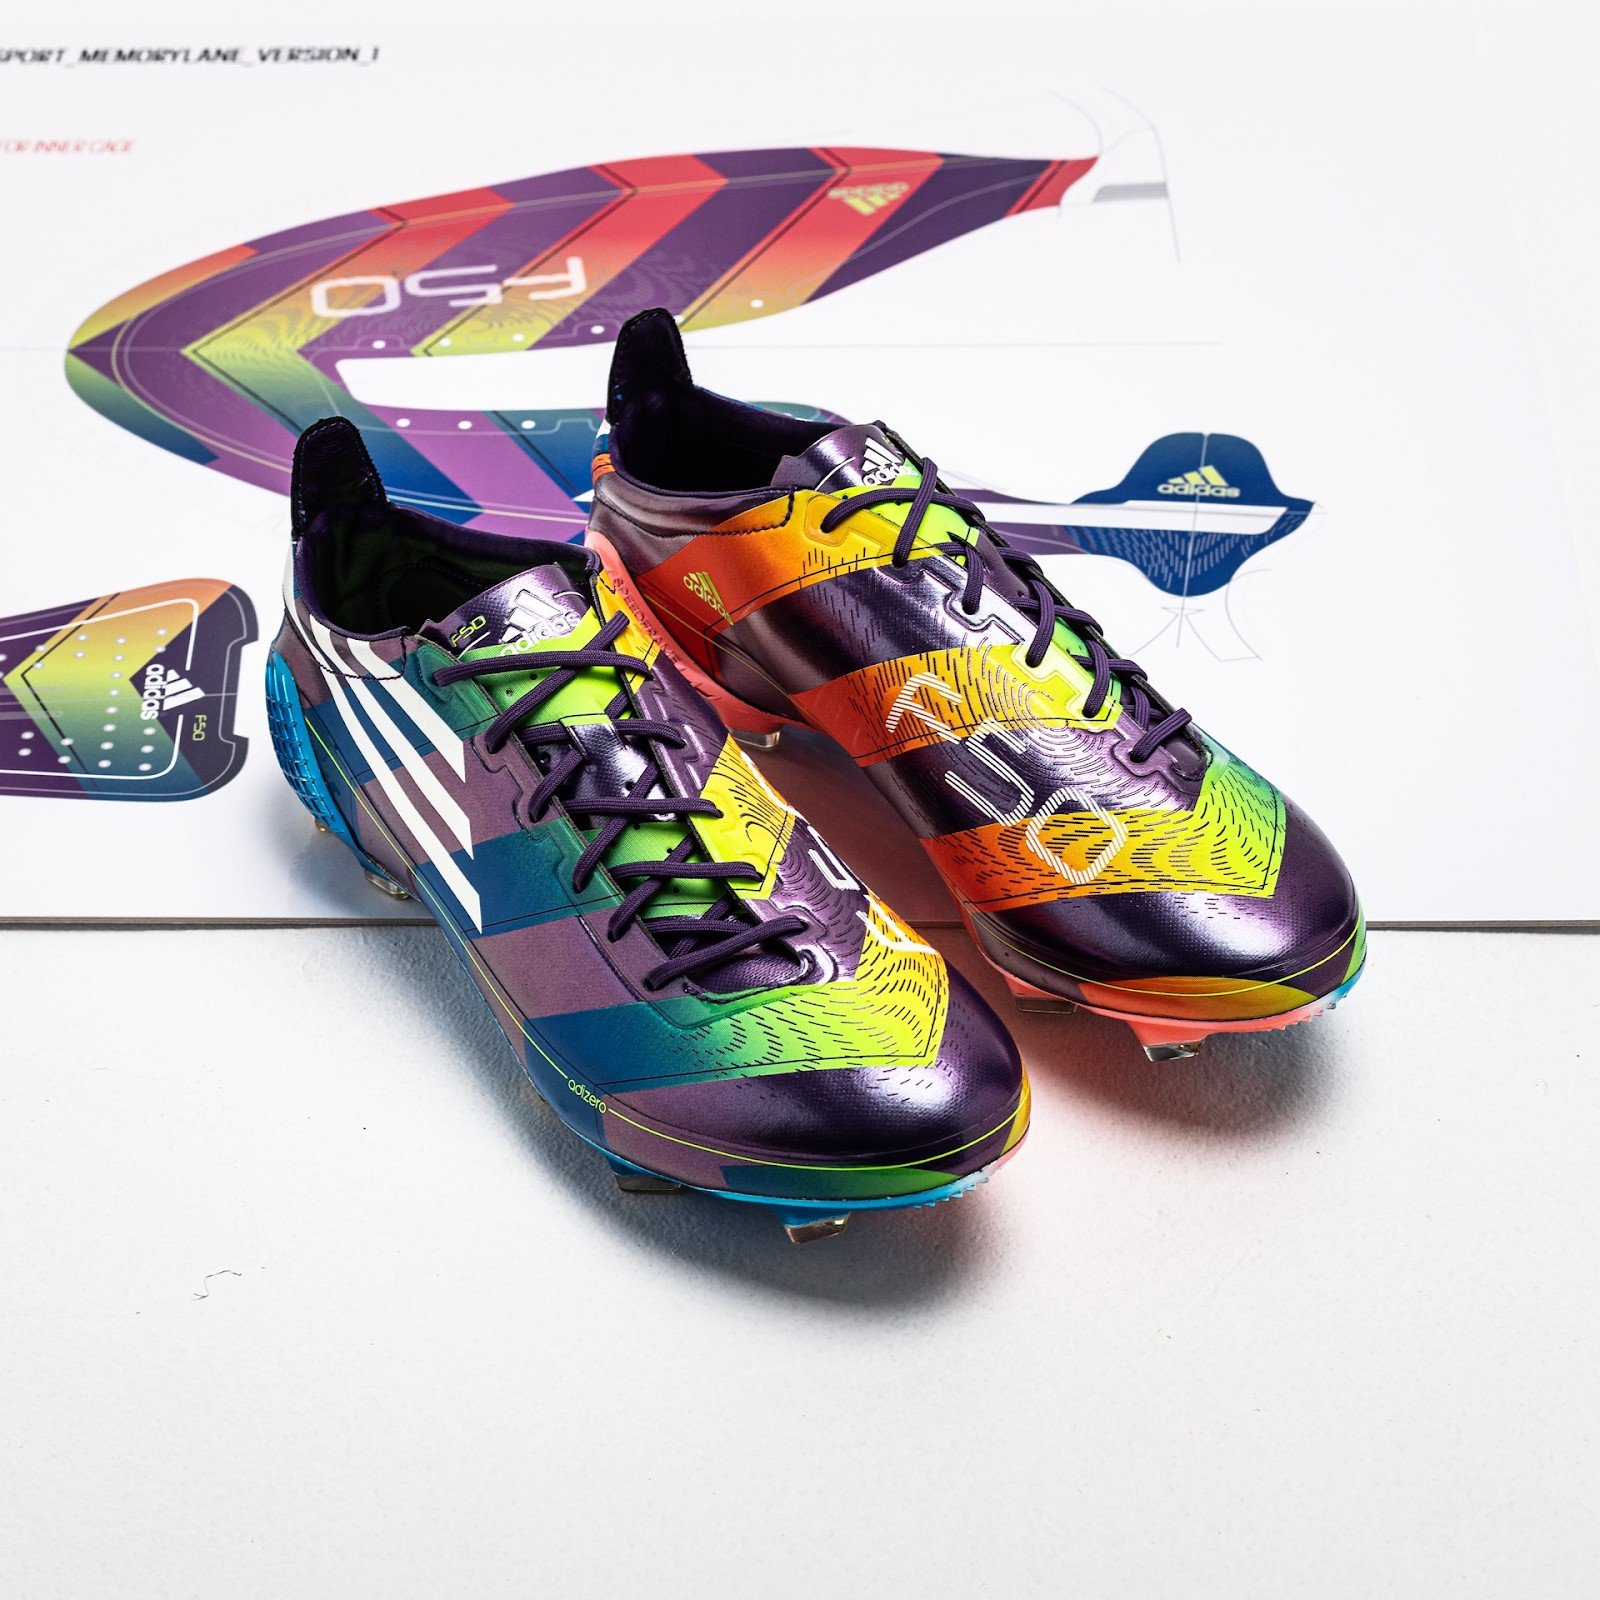 Một số hình ảnh về đôi giày đá bóng adidas F50 Adizero Memory Lane